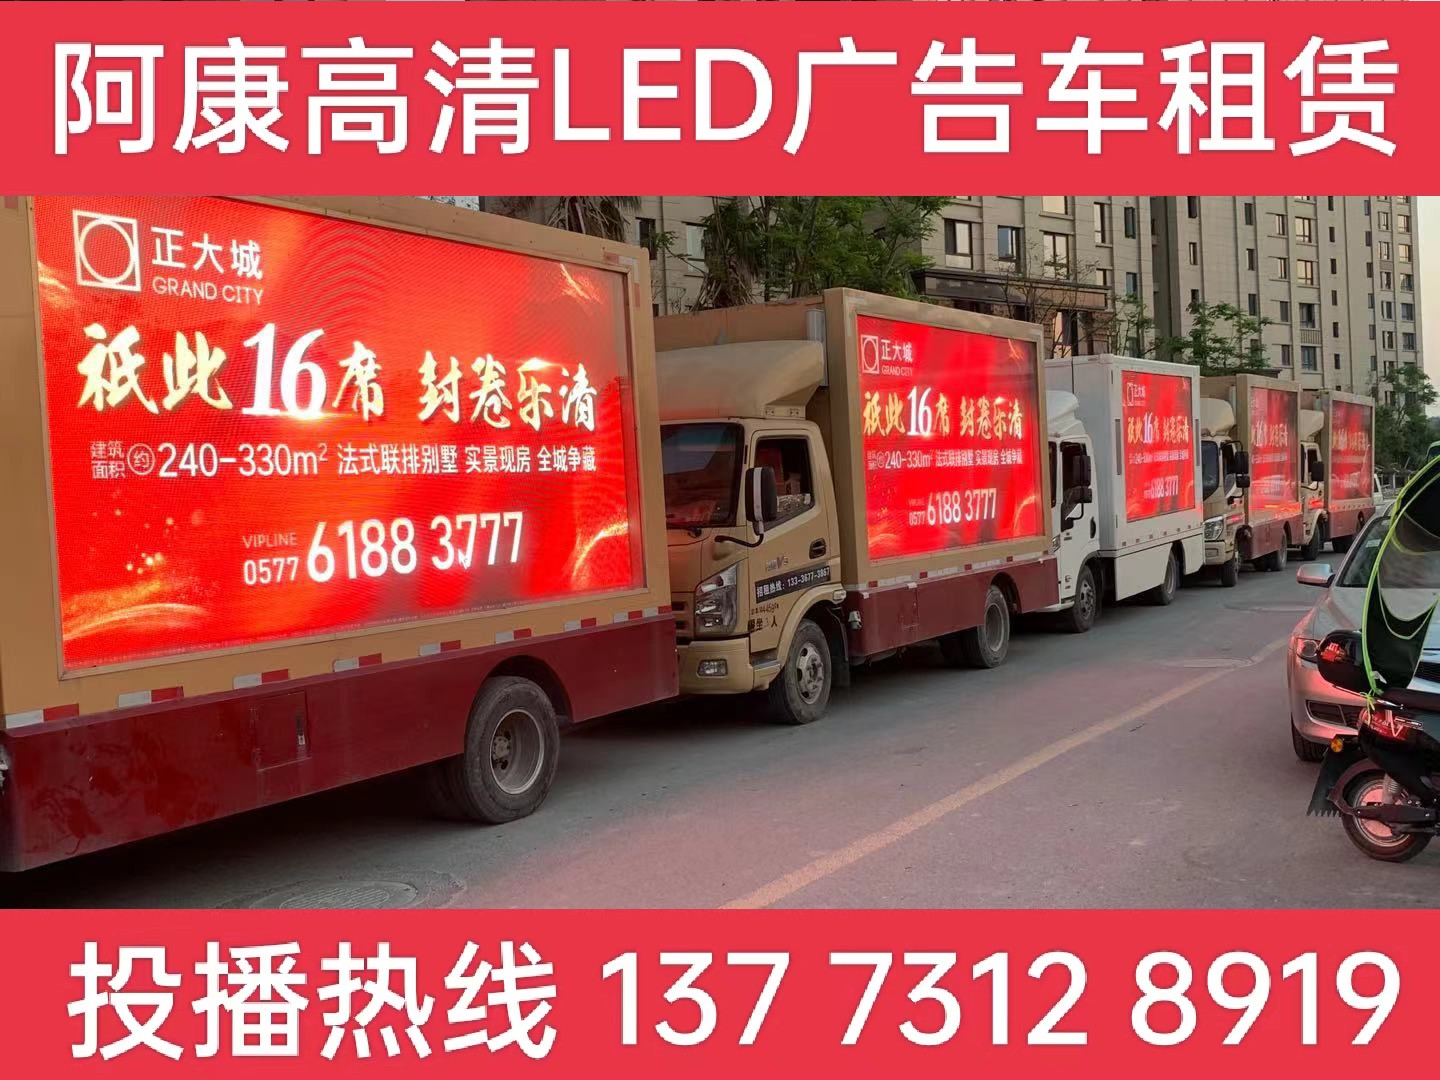 海宁LED广告车出租